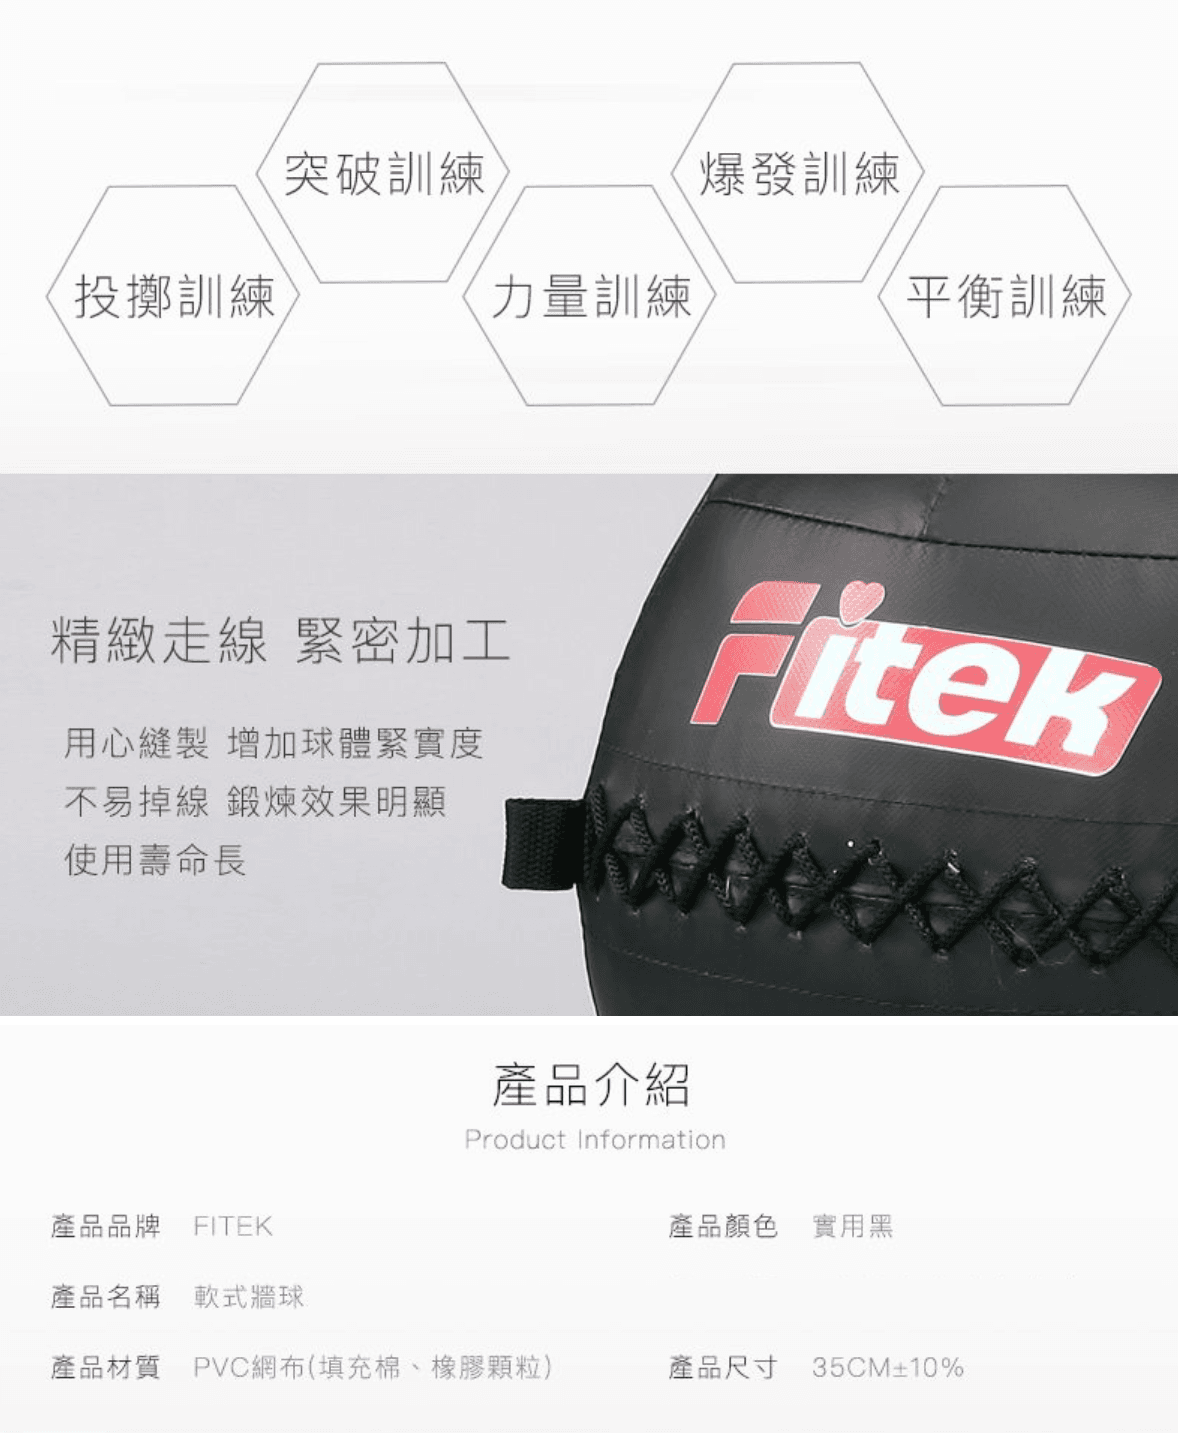 軟式藥球牆球4KG【Fitek】 4